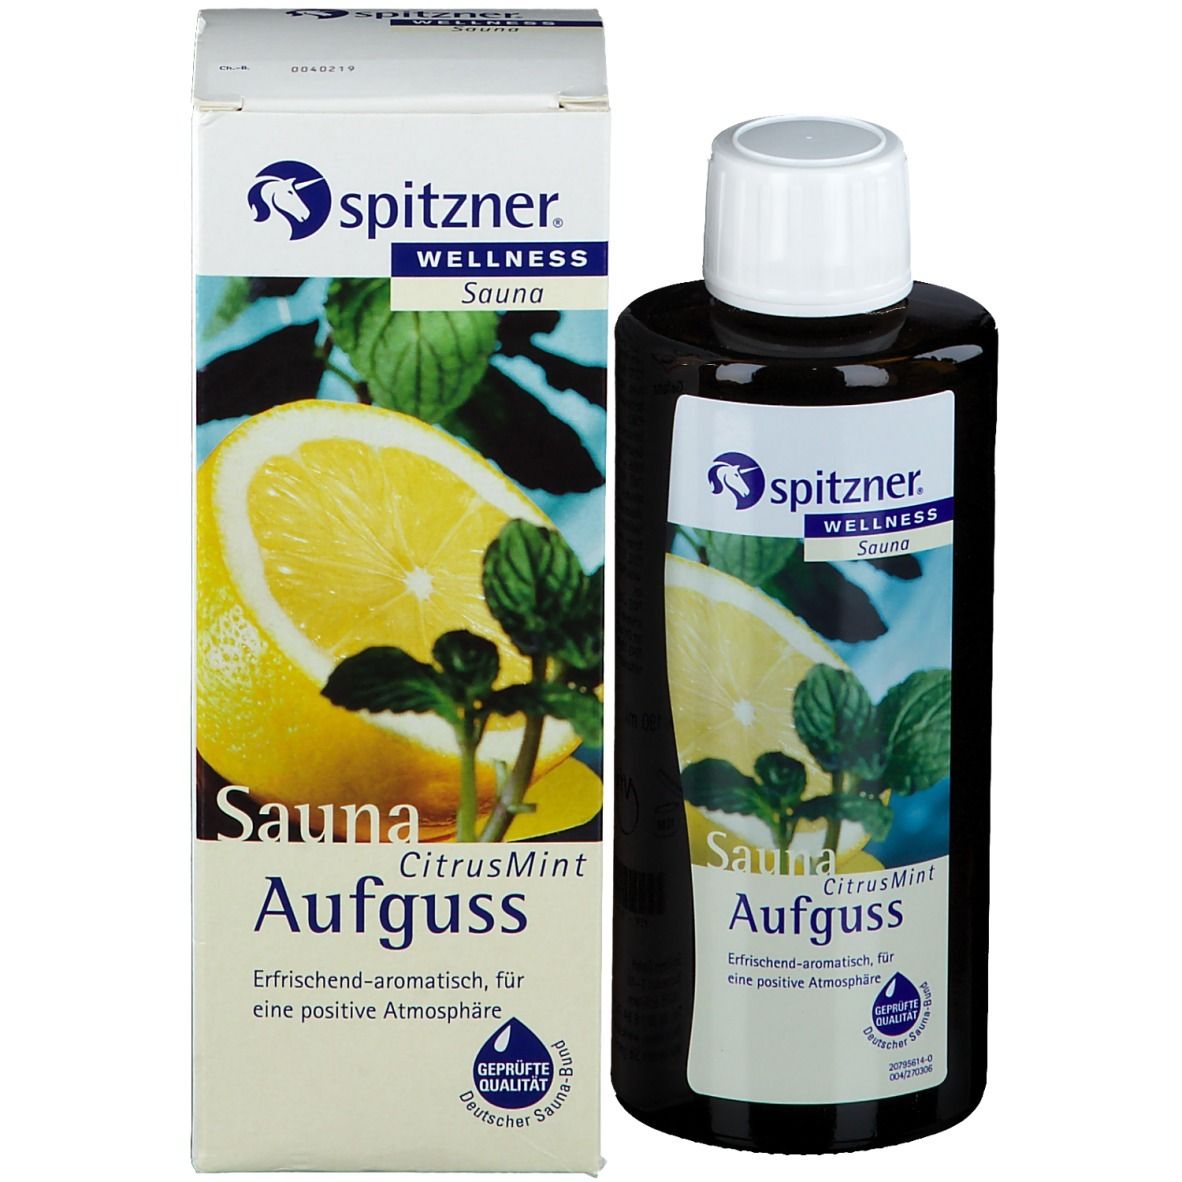 Spitzner® Wellness Saunaaufguss Citrus Mint